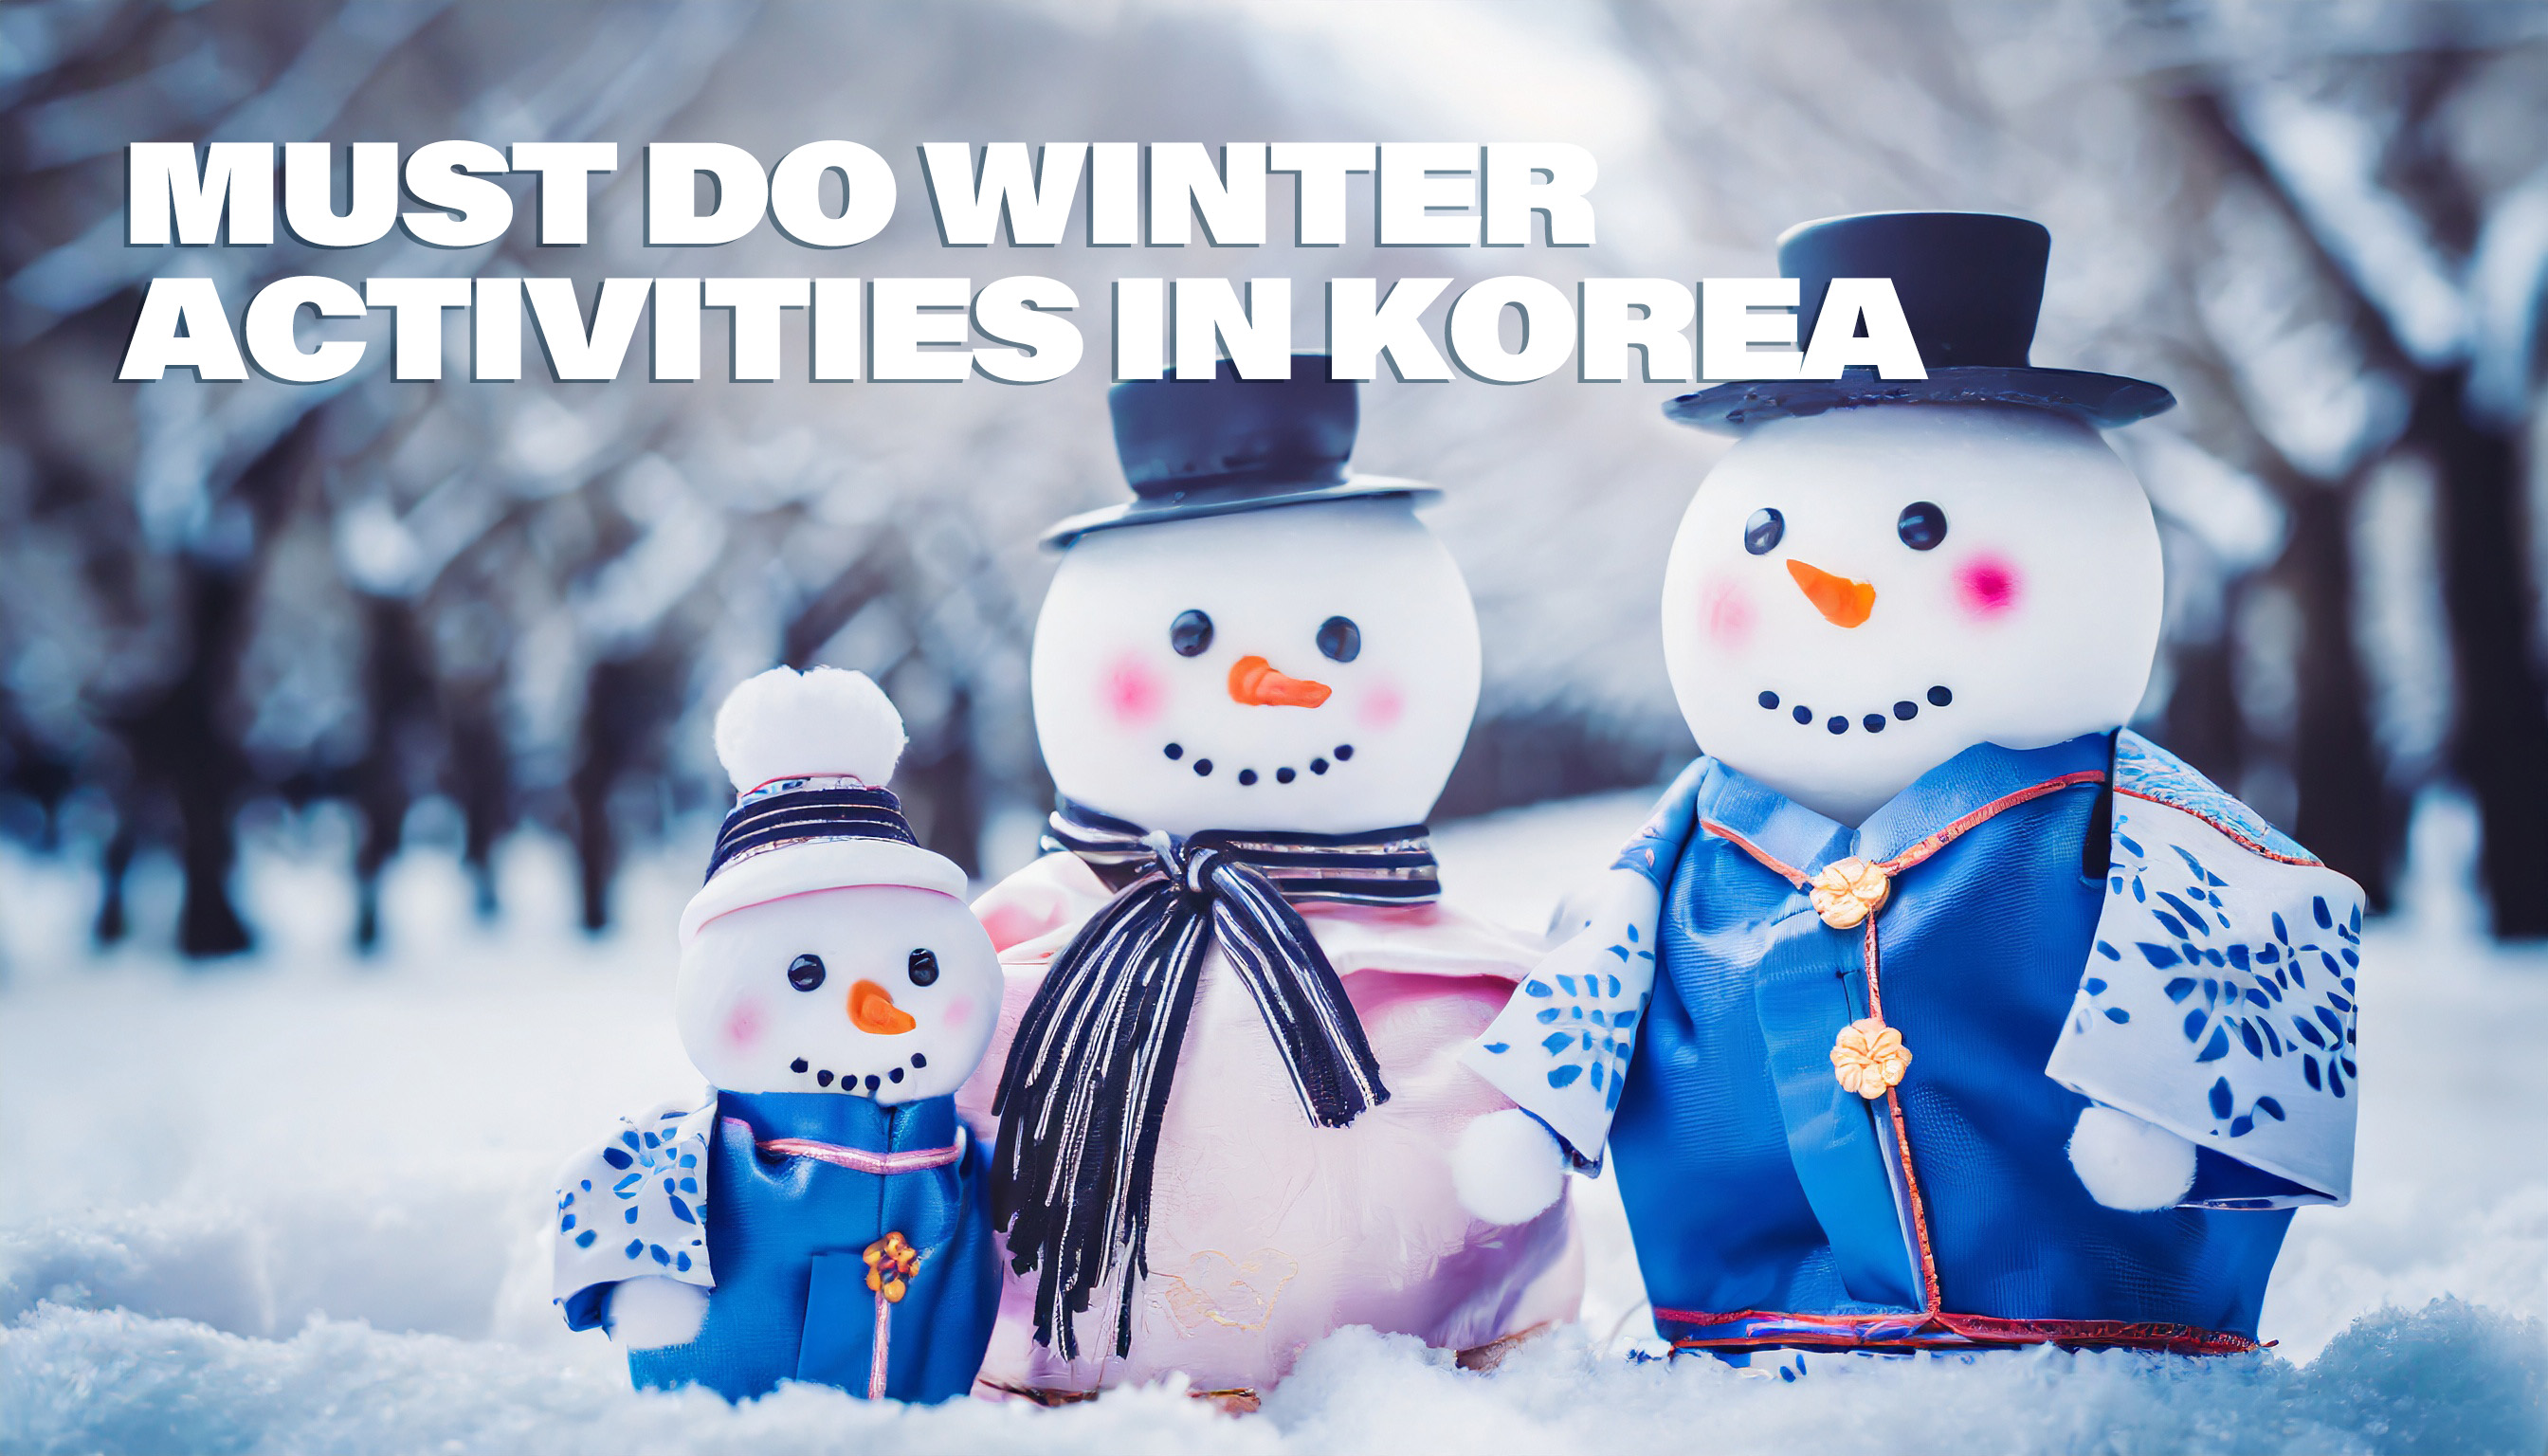 Must do winter activities in Korea.jpg